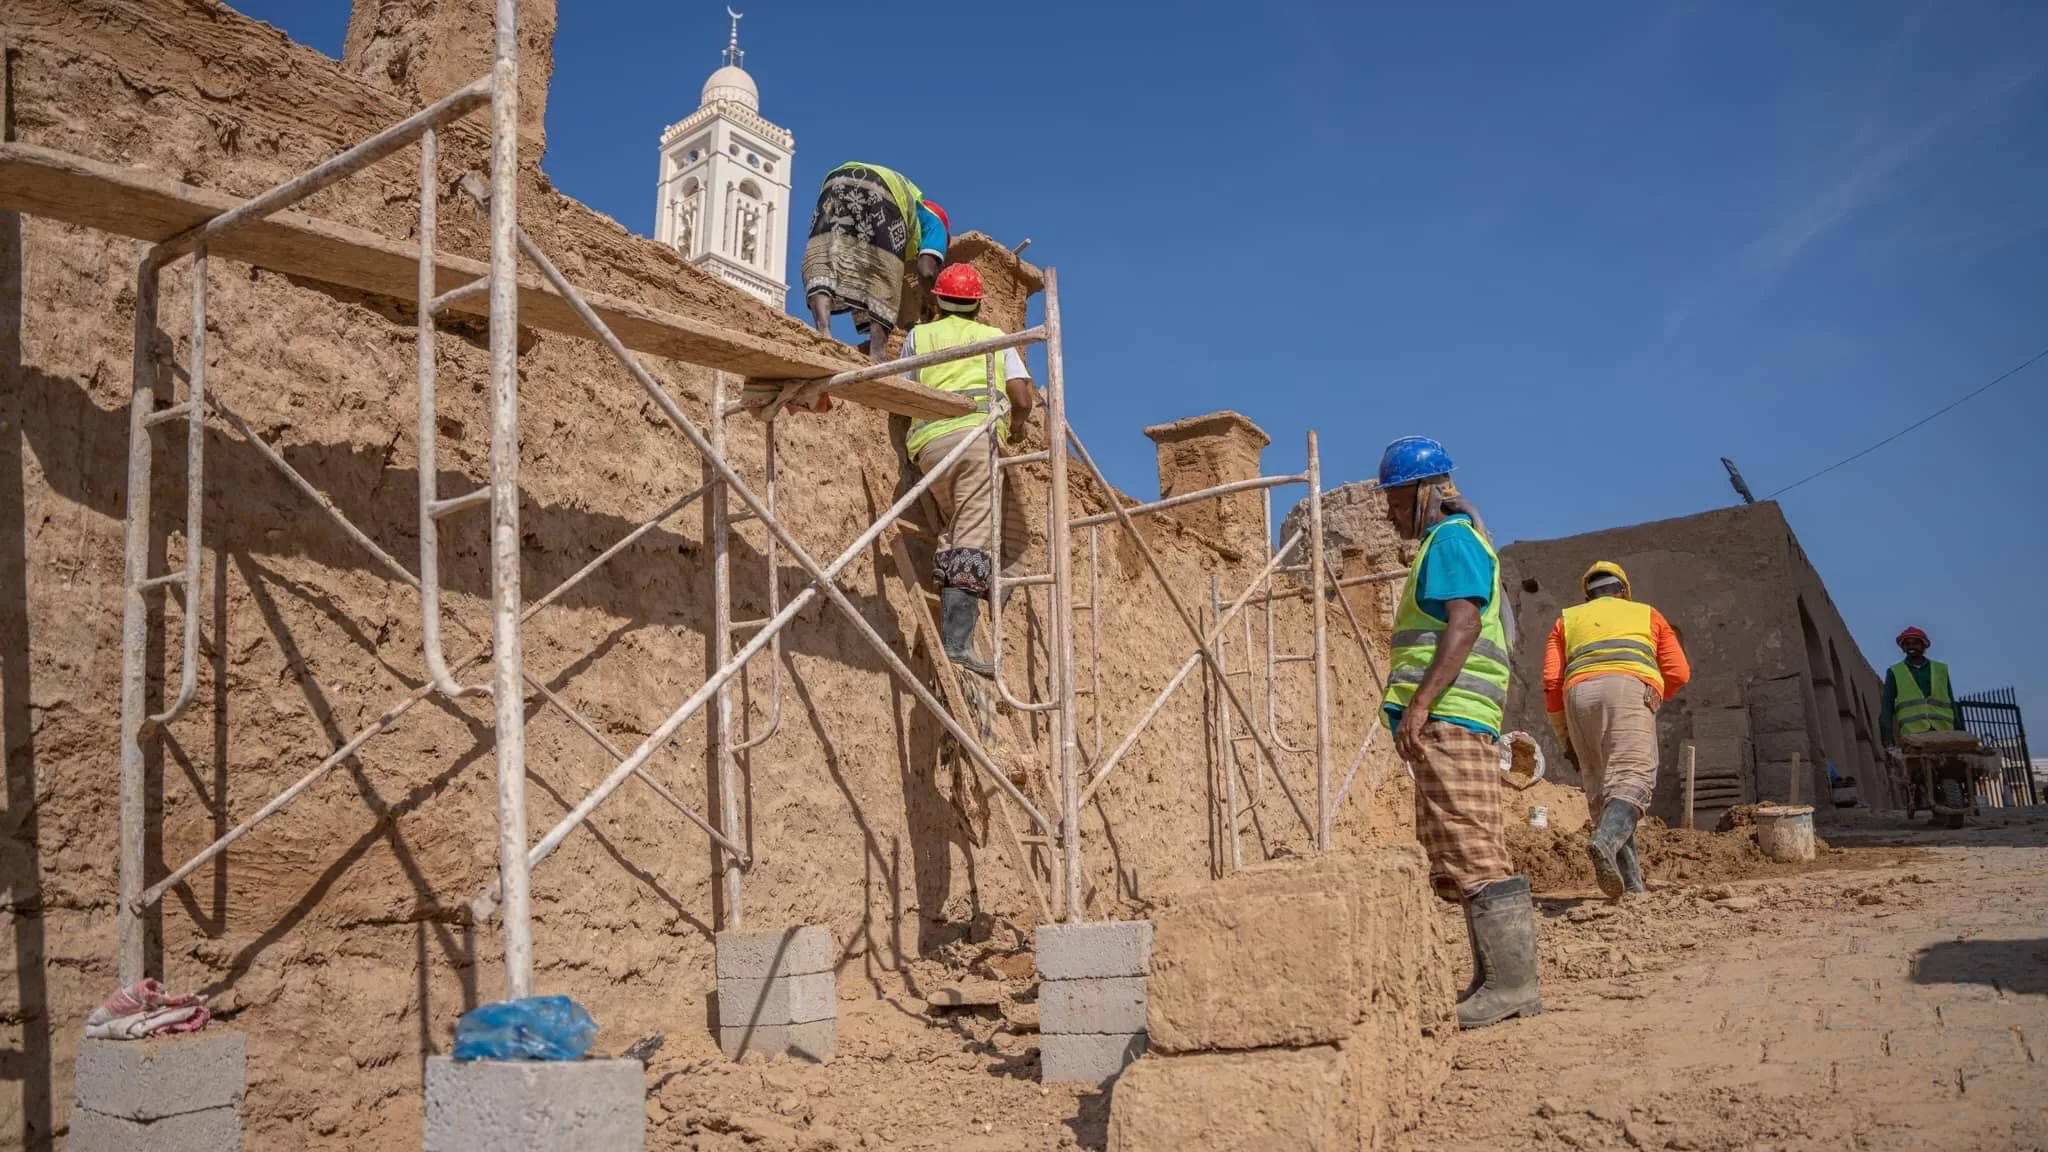 أخبار اليمن اليوم: البرنامج السعودي لتنمية وإعمار اليمن يساهم في إعادة تأهيل قصر سيئون التاريخي